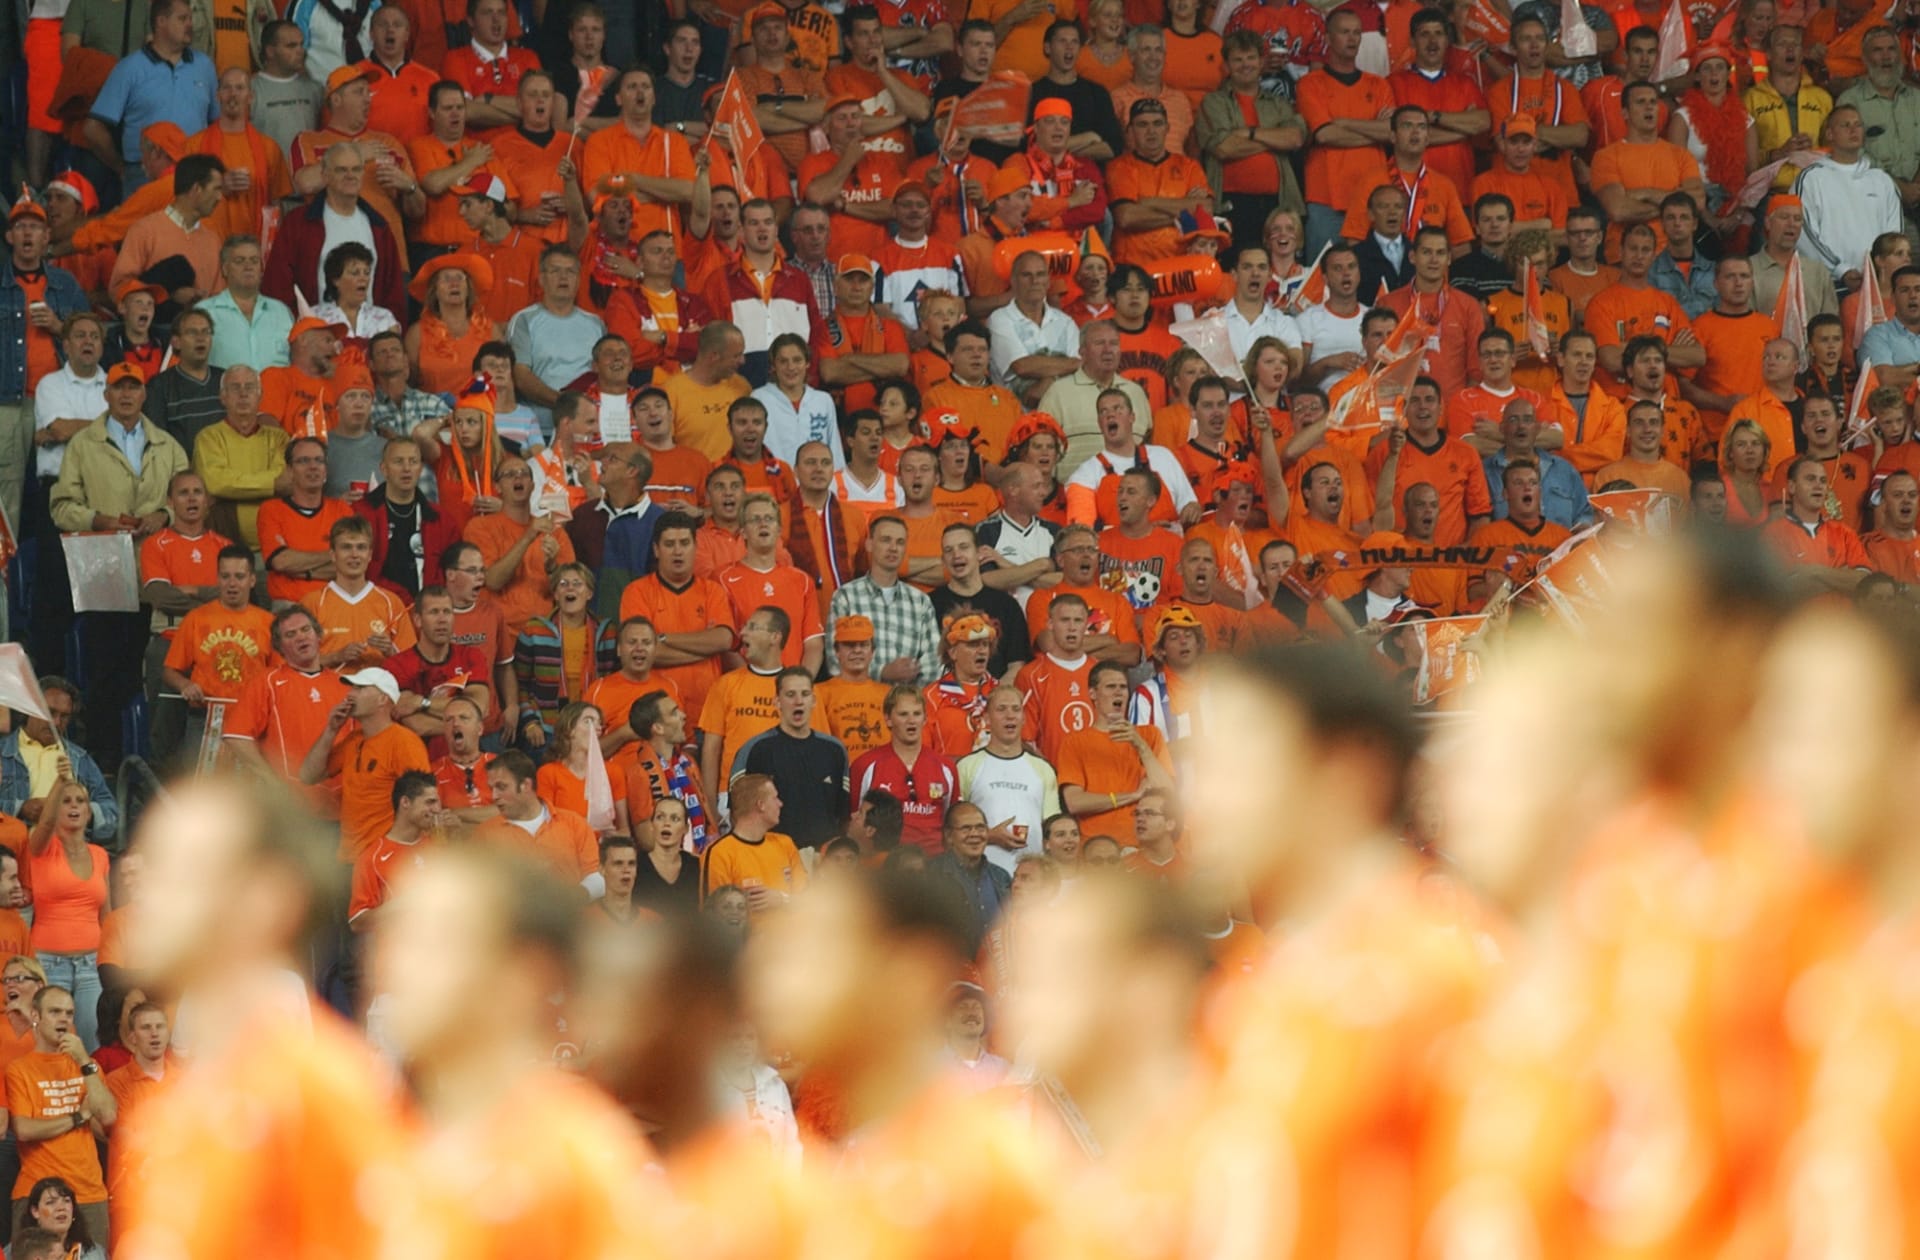 Nizozemské fotbalisty tradičně podporuje oranžová armáda věrných fanoušků.